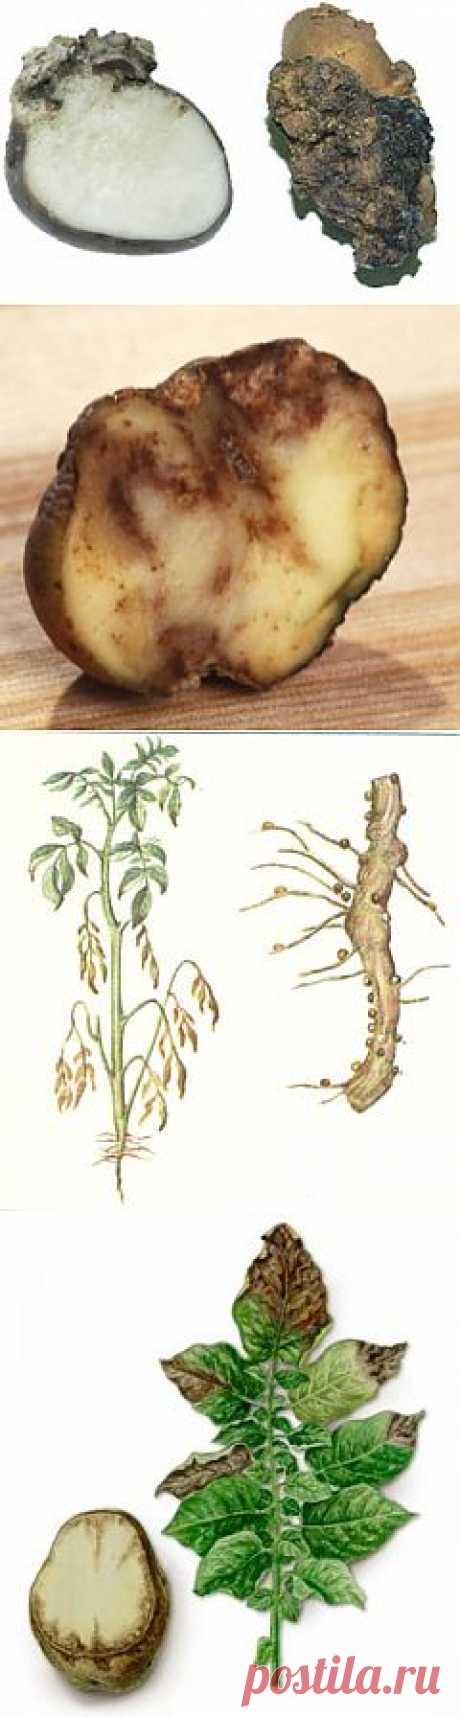 Болезни картофеля « Все о картофеле